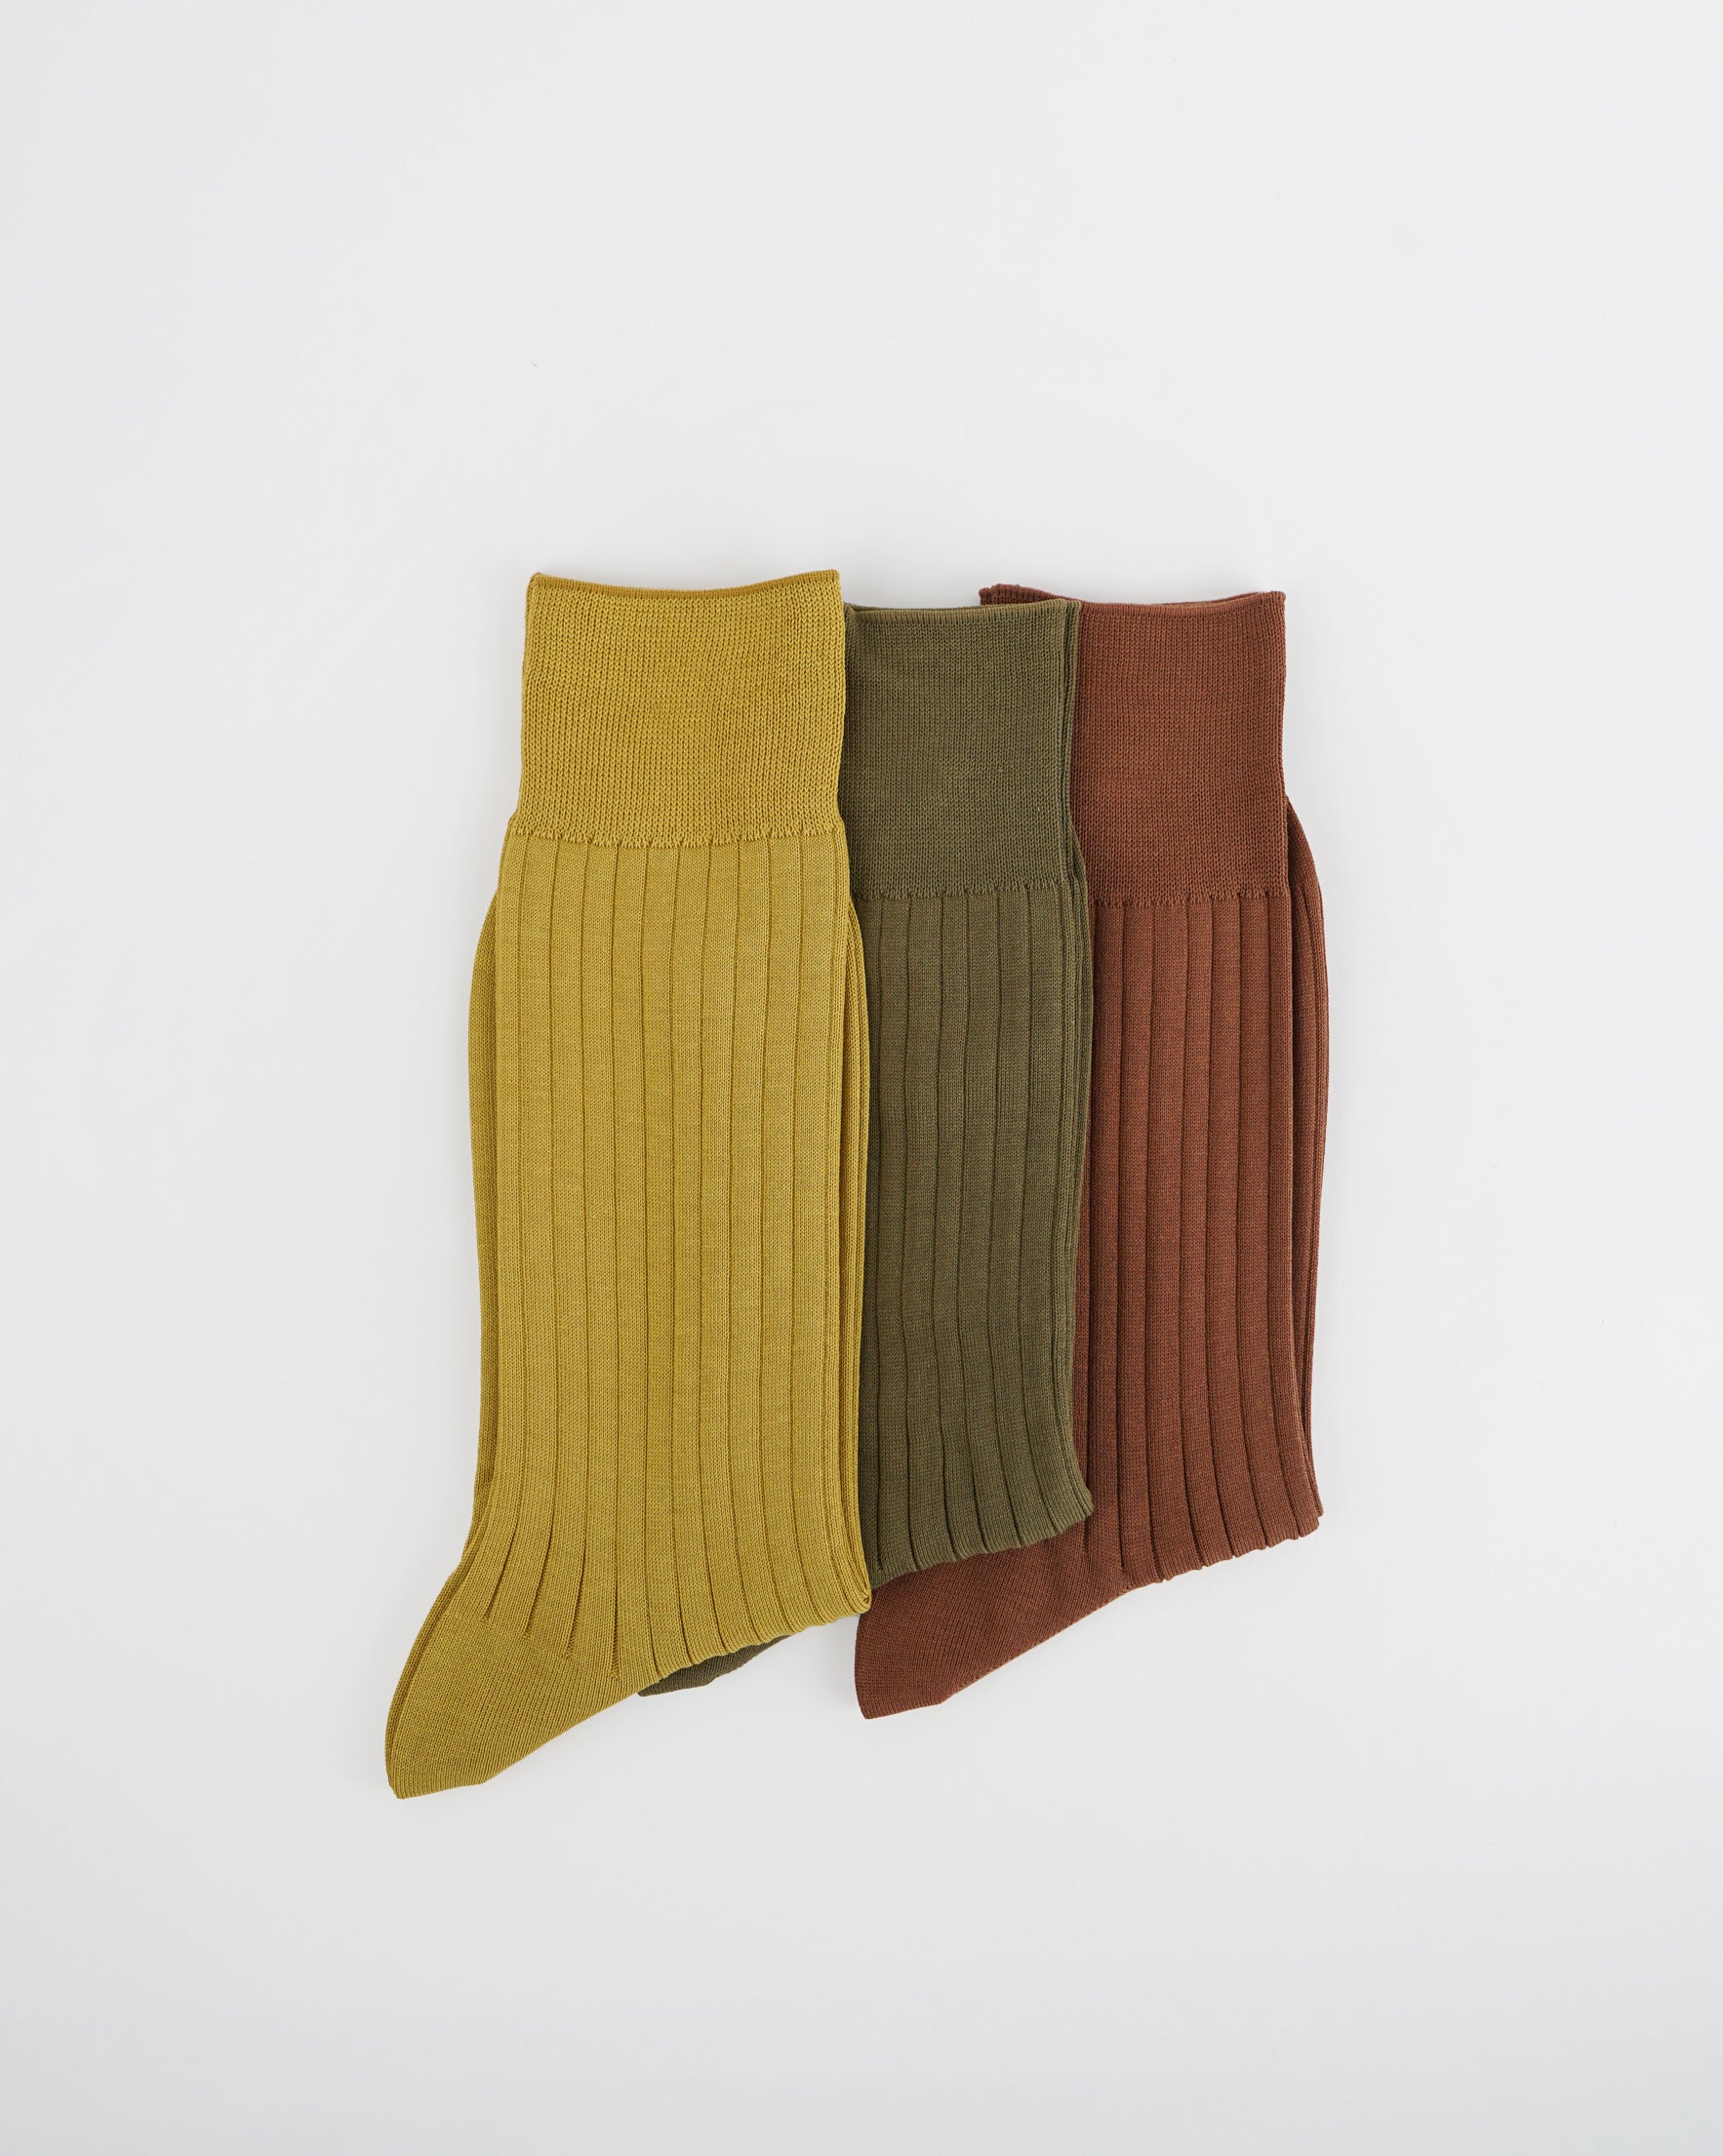 Dress Socks Set / Brown Khaki Yellow